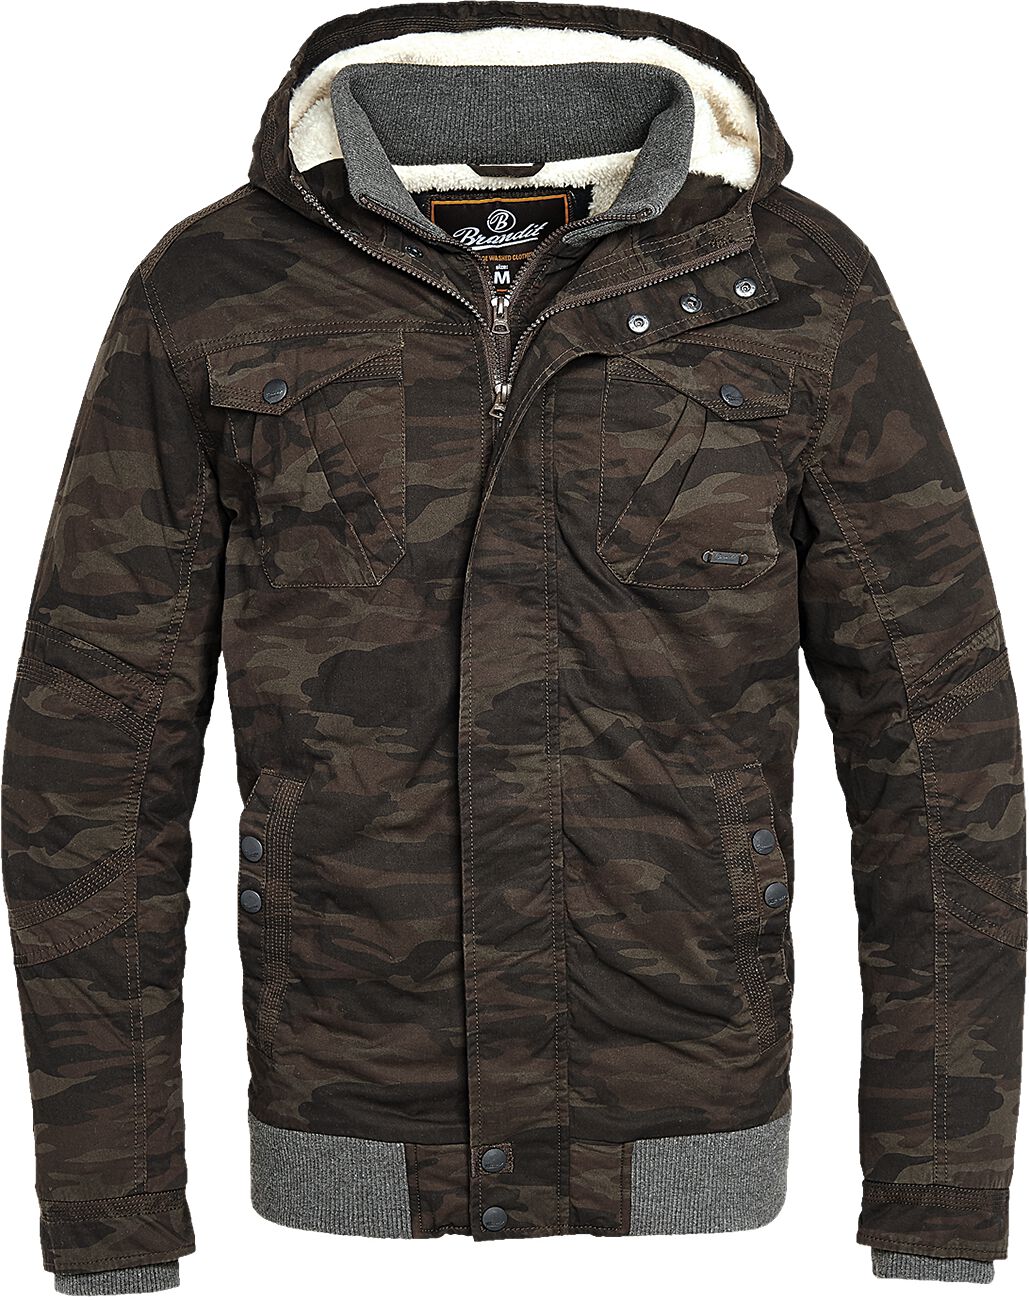 Brandit - Camouflage/Flecktarn Winterjacke - Parkmont Jacket - S bis 5XL - für Männer - Größe M - camouflage